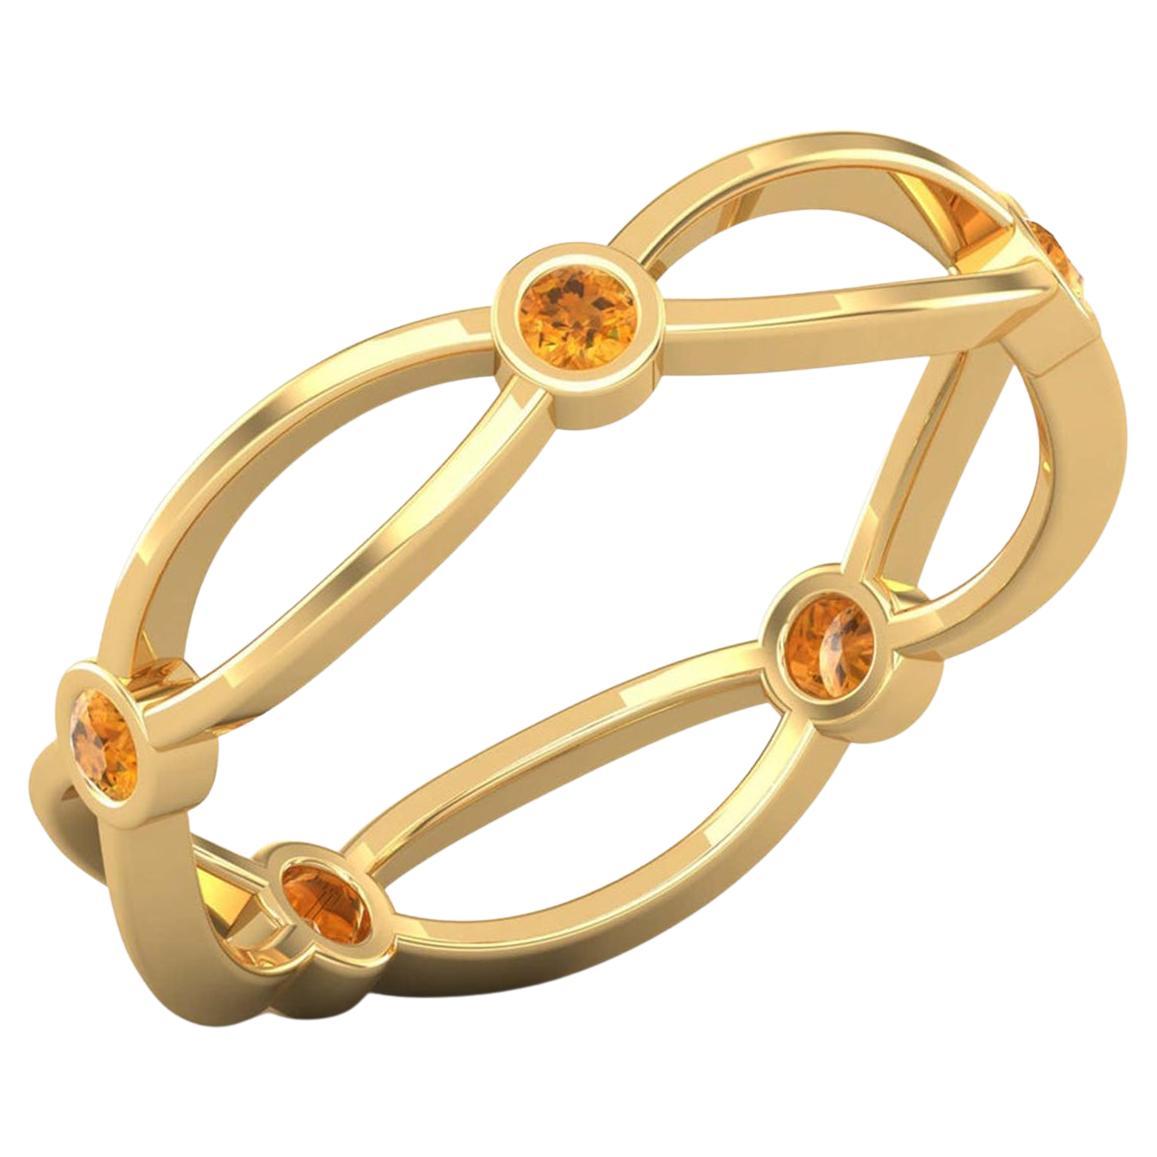 14 Karat Gold Round Citrine Ring / November Birthstone Ring / Ring for Her For Sale